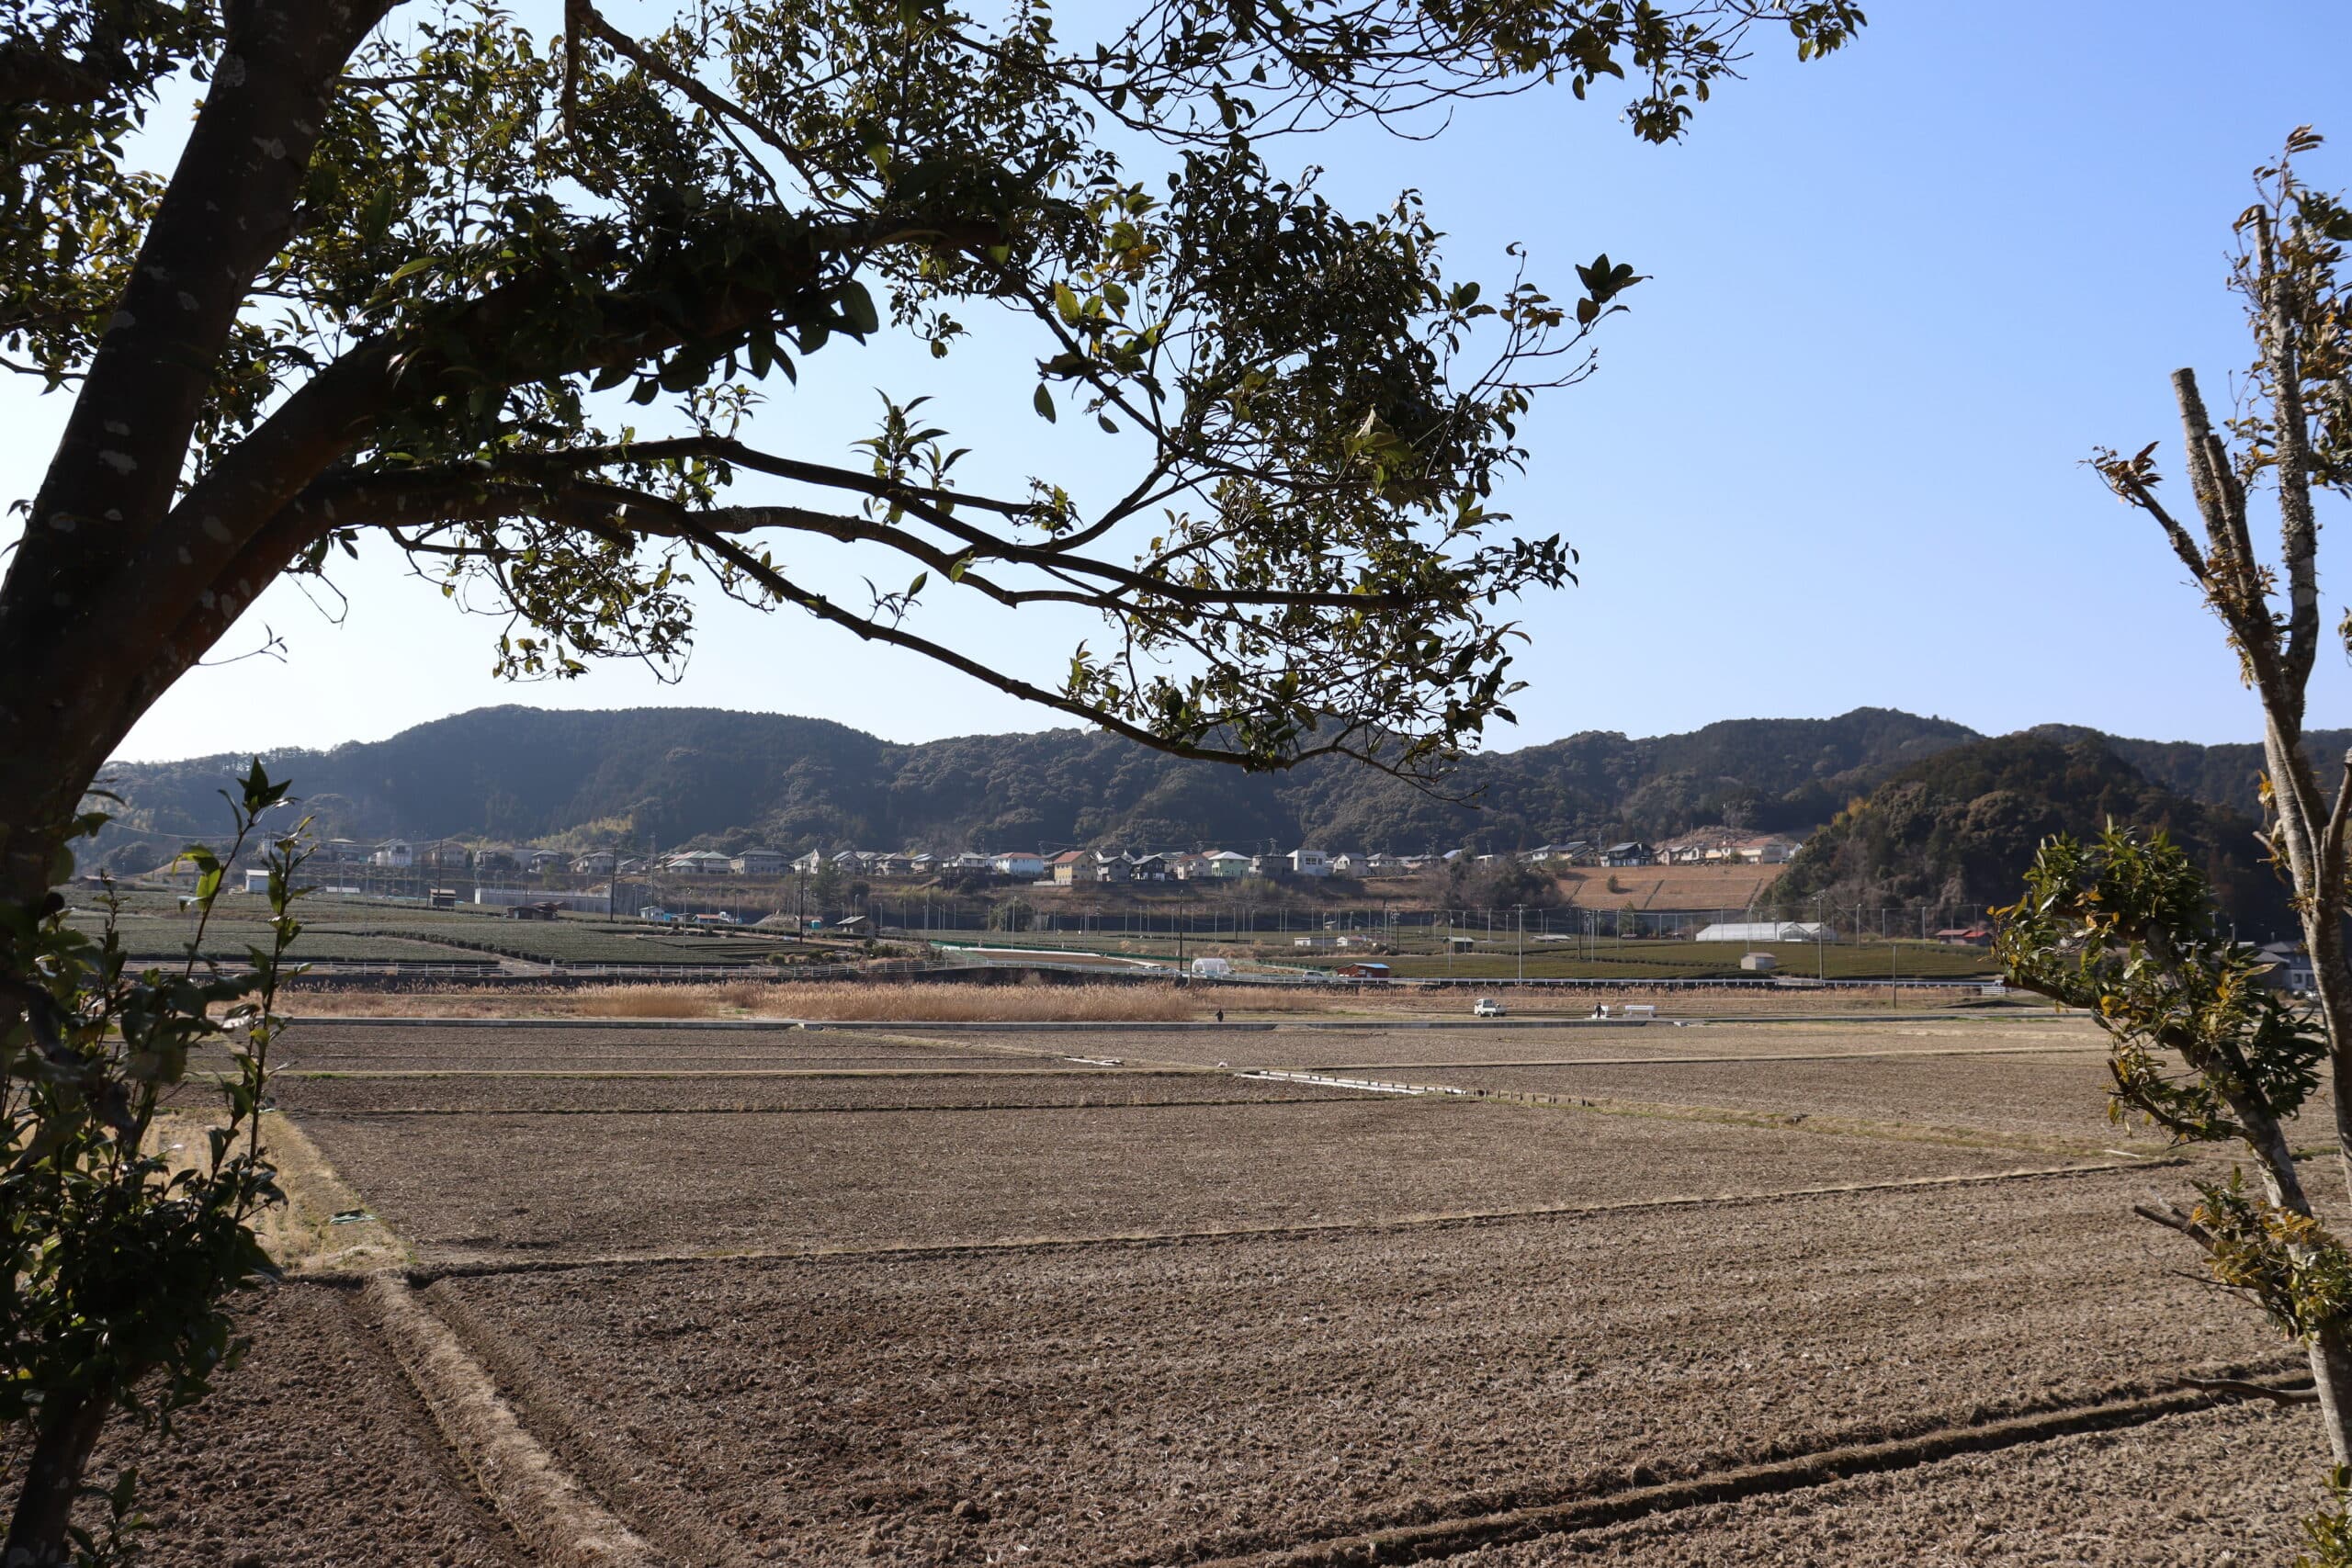 Rural view in Japan, spring 2021